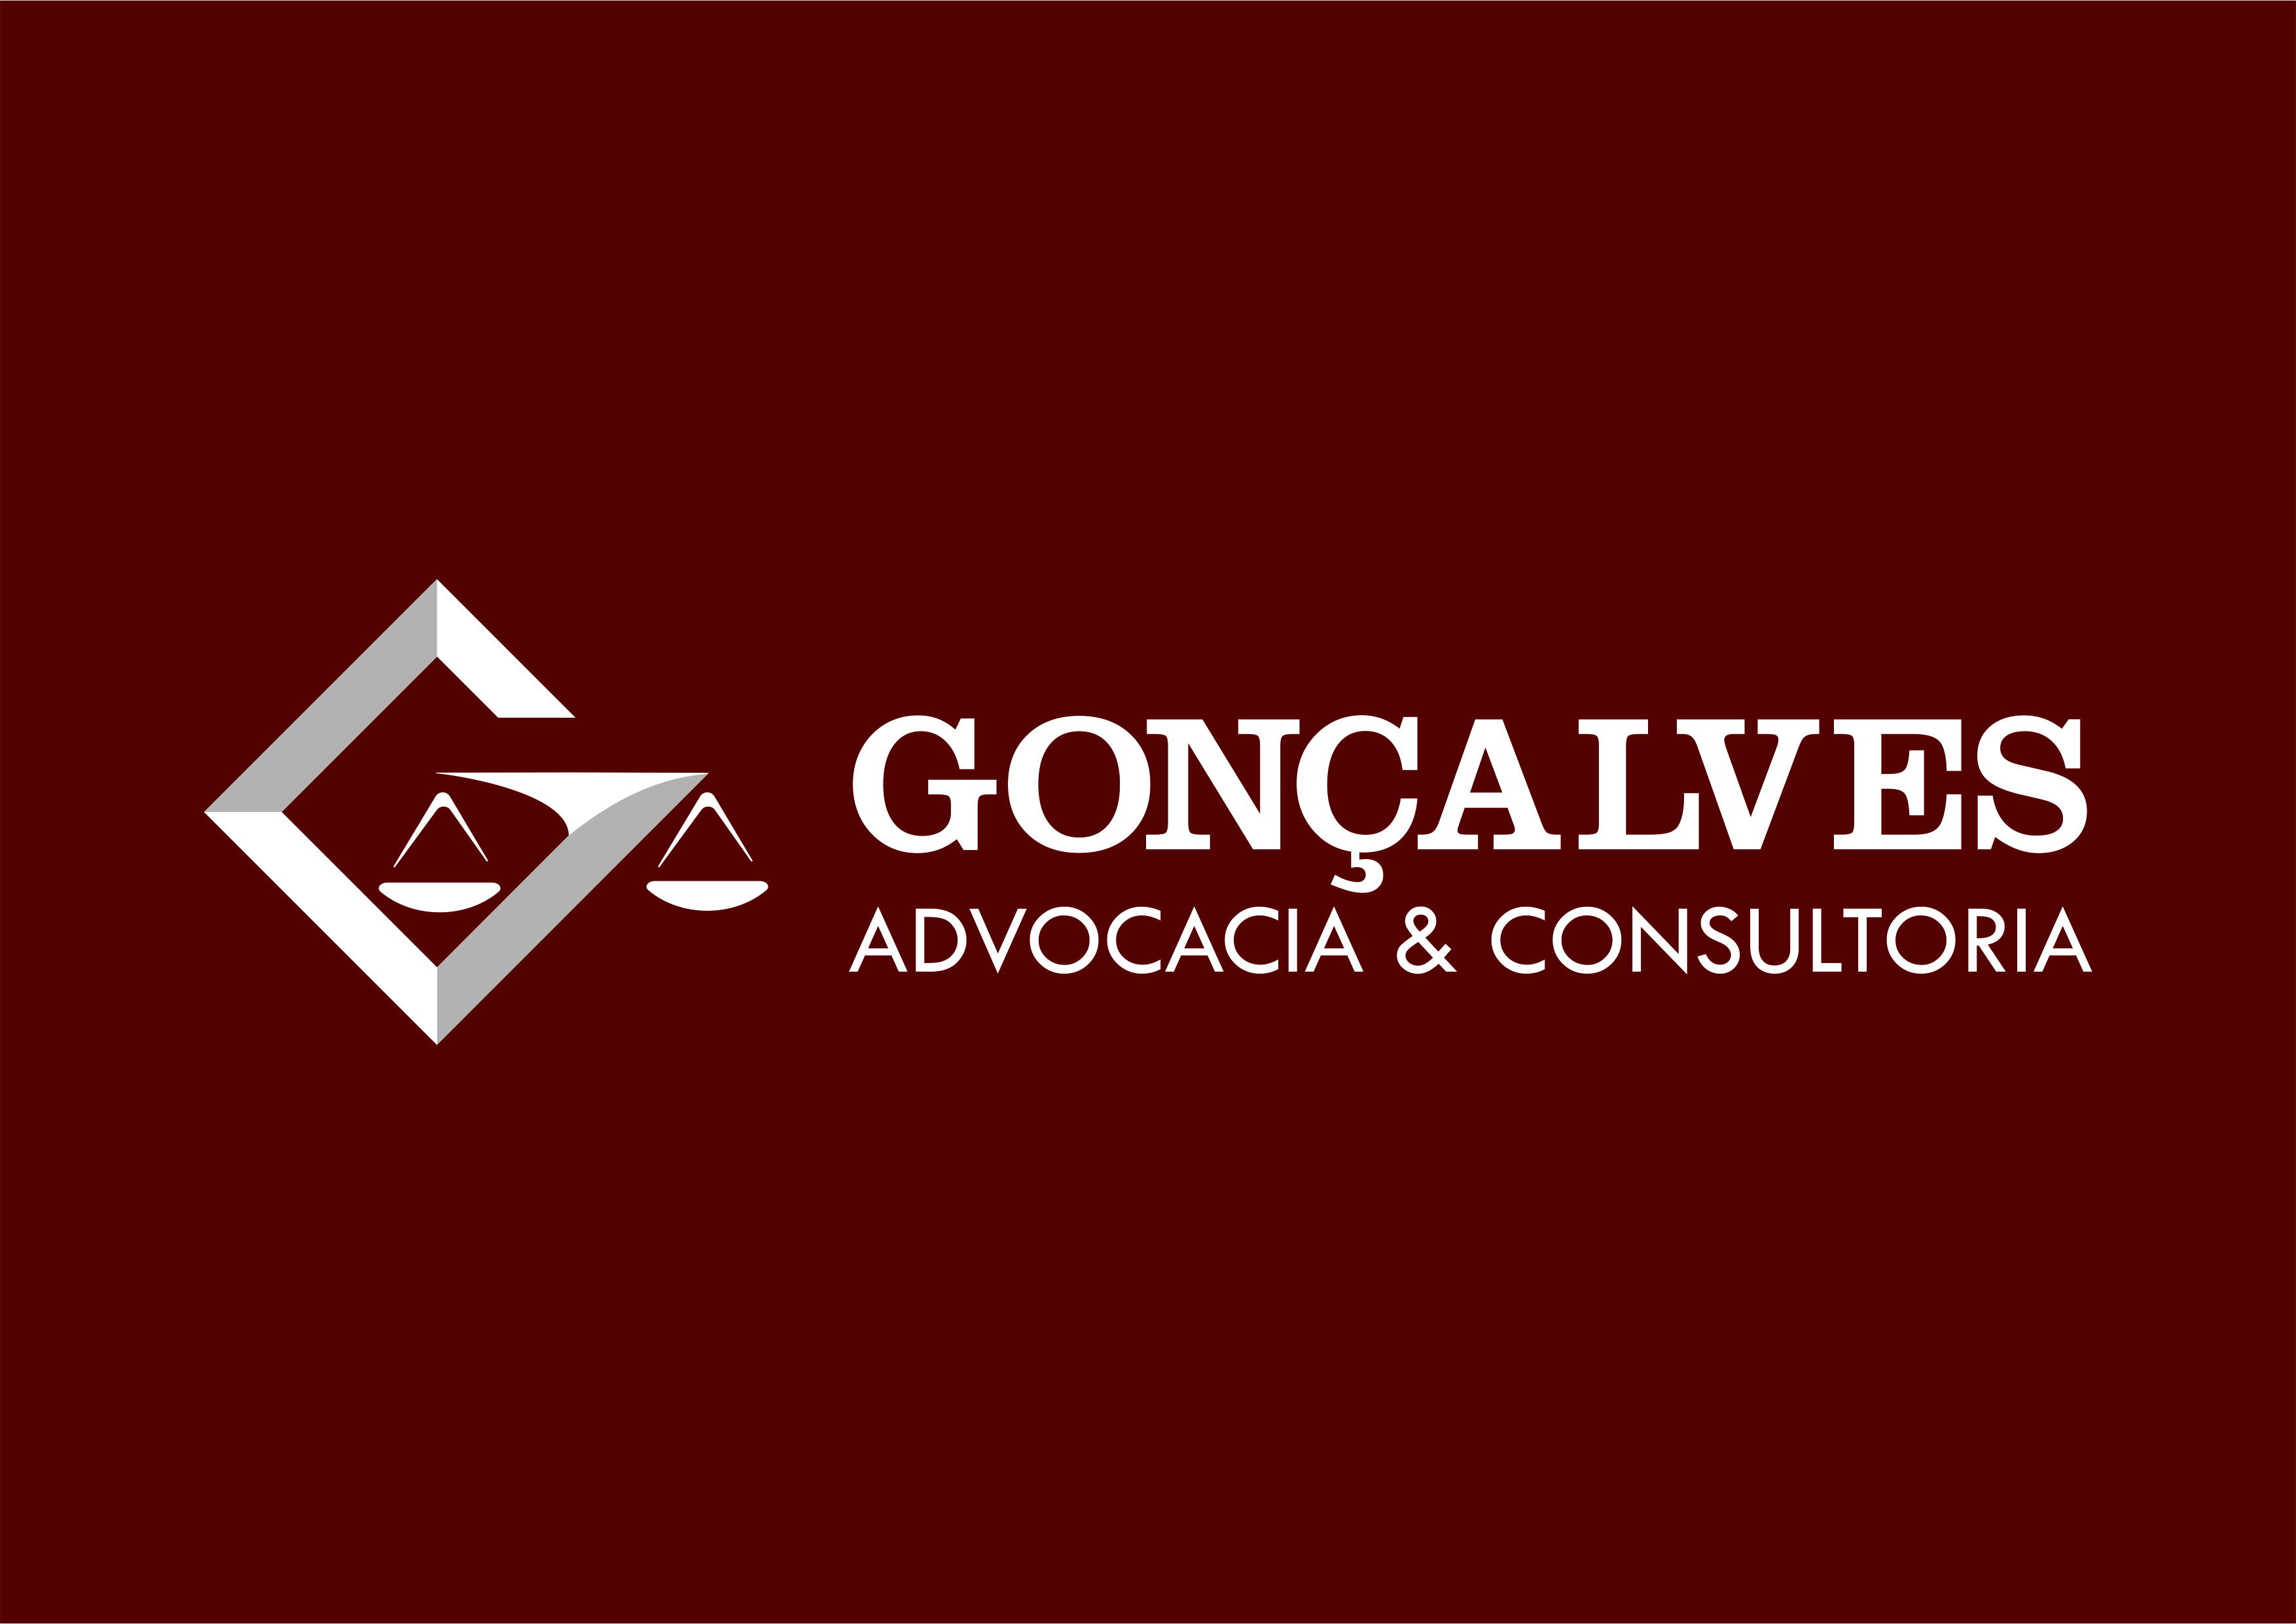 Gonçalves Advocacia & Consultoria 